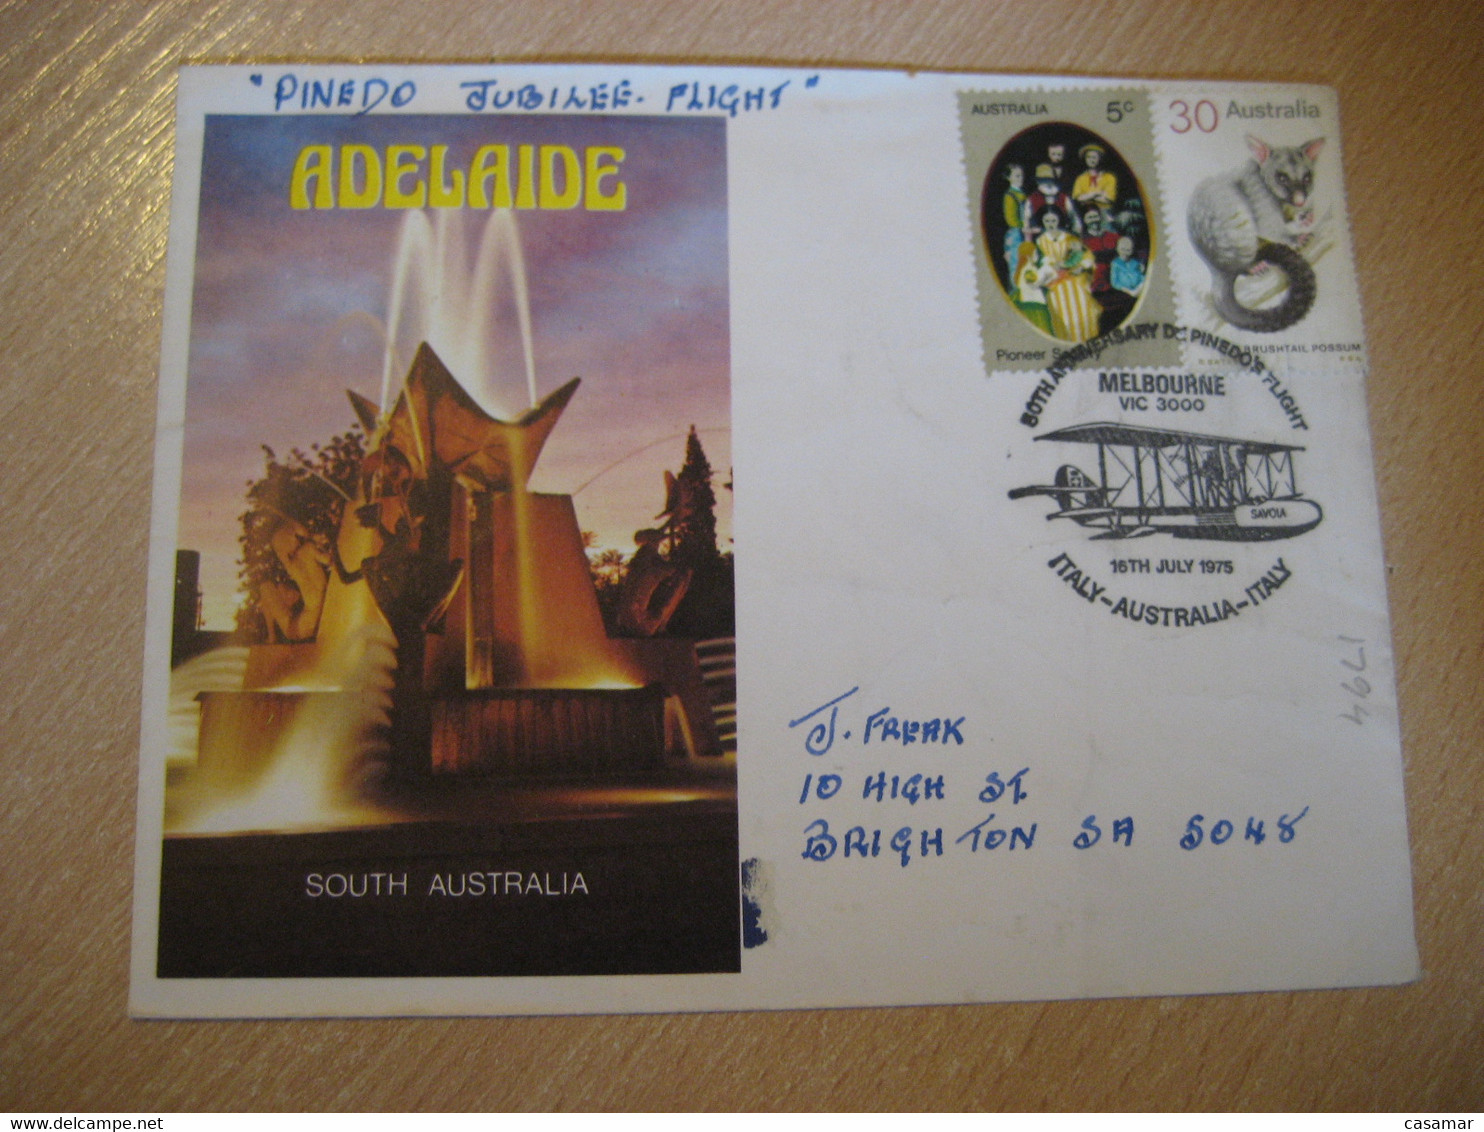 ITALY Fiumicino Airport AUSTRALIA 50th Anniv. Pinedo Flight Samoa Plane 1975 Cancel Adelaide Cover AUSTRALIA - Primi Voli